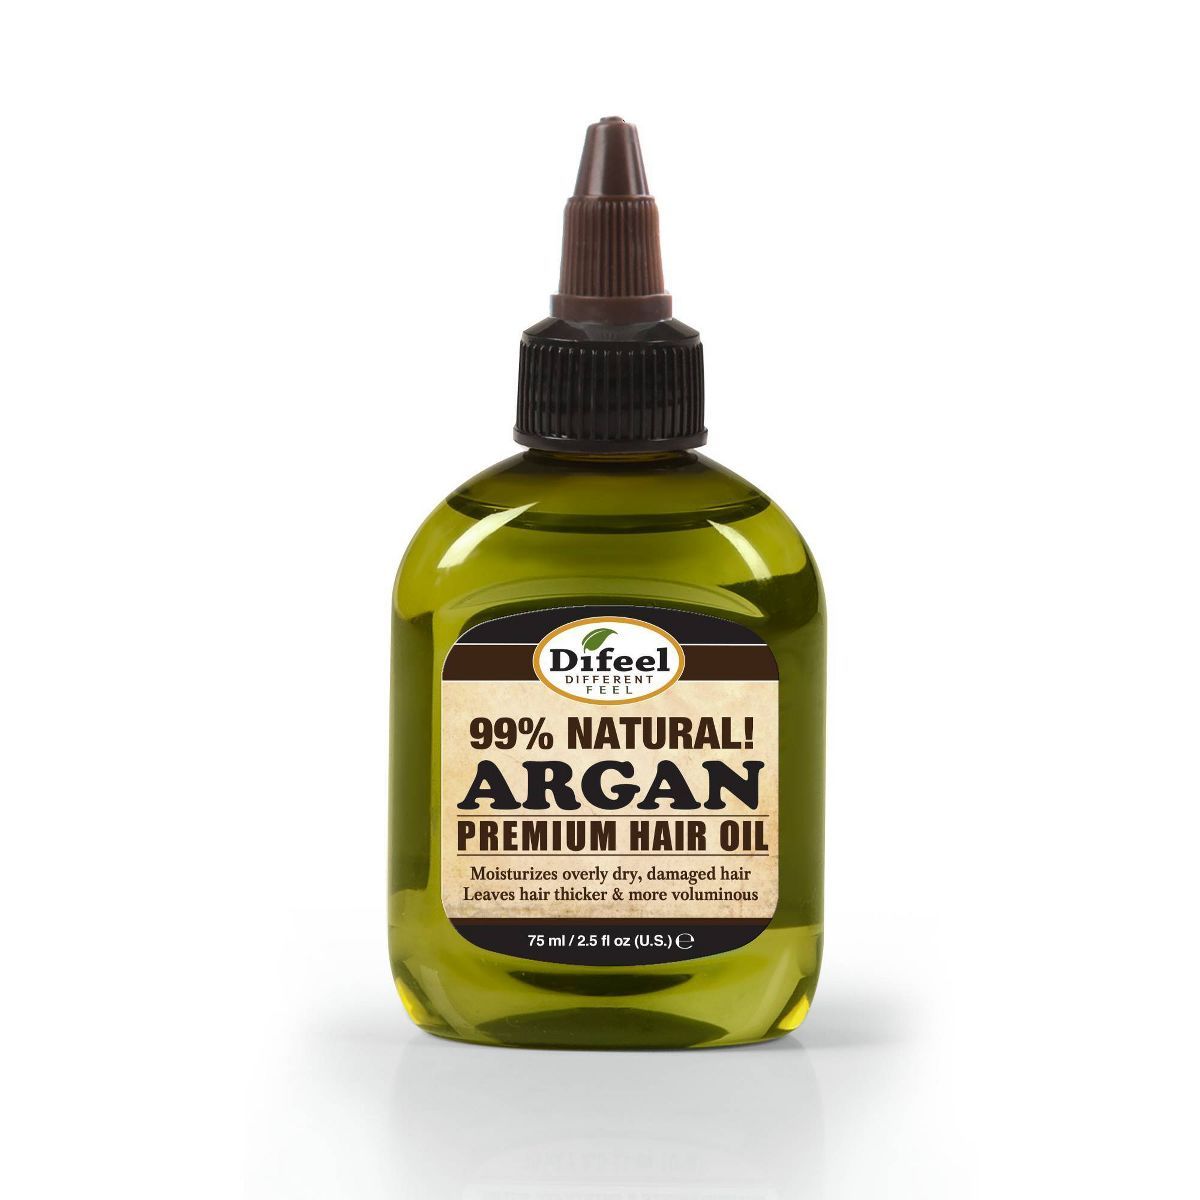 Difeel Premium Natural Argan Hair Oil - 2.5 fl oz | Target